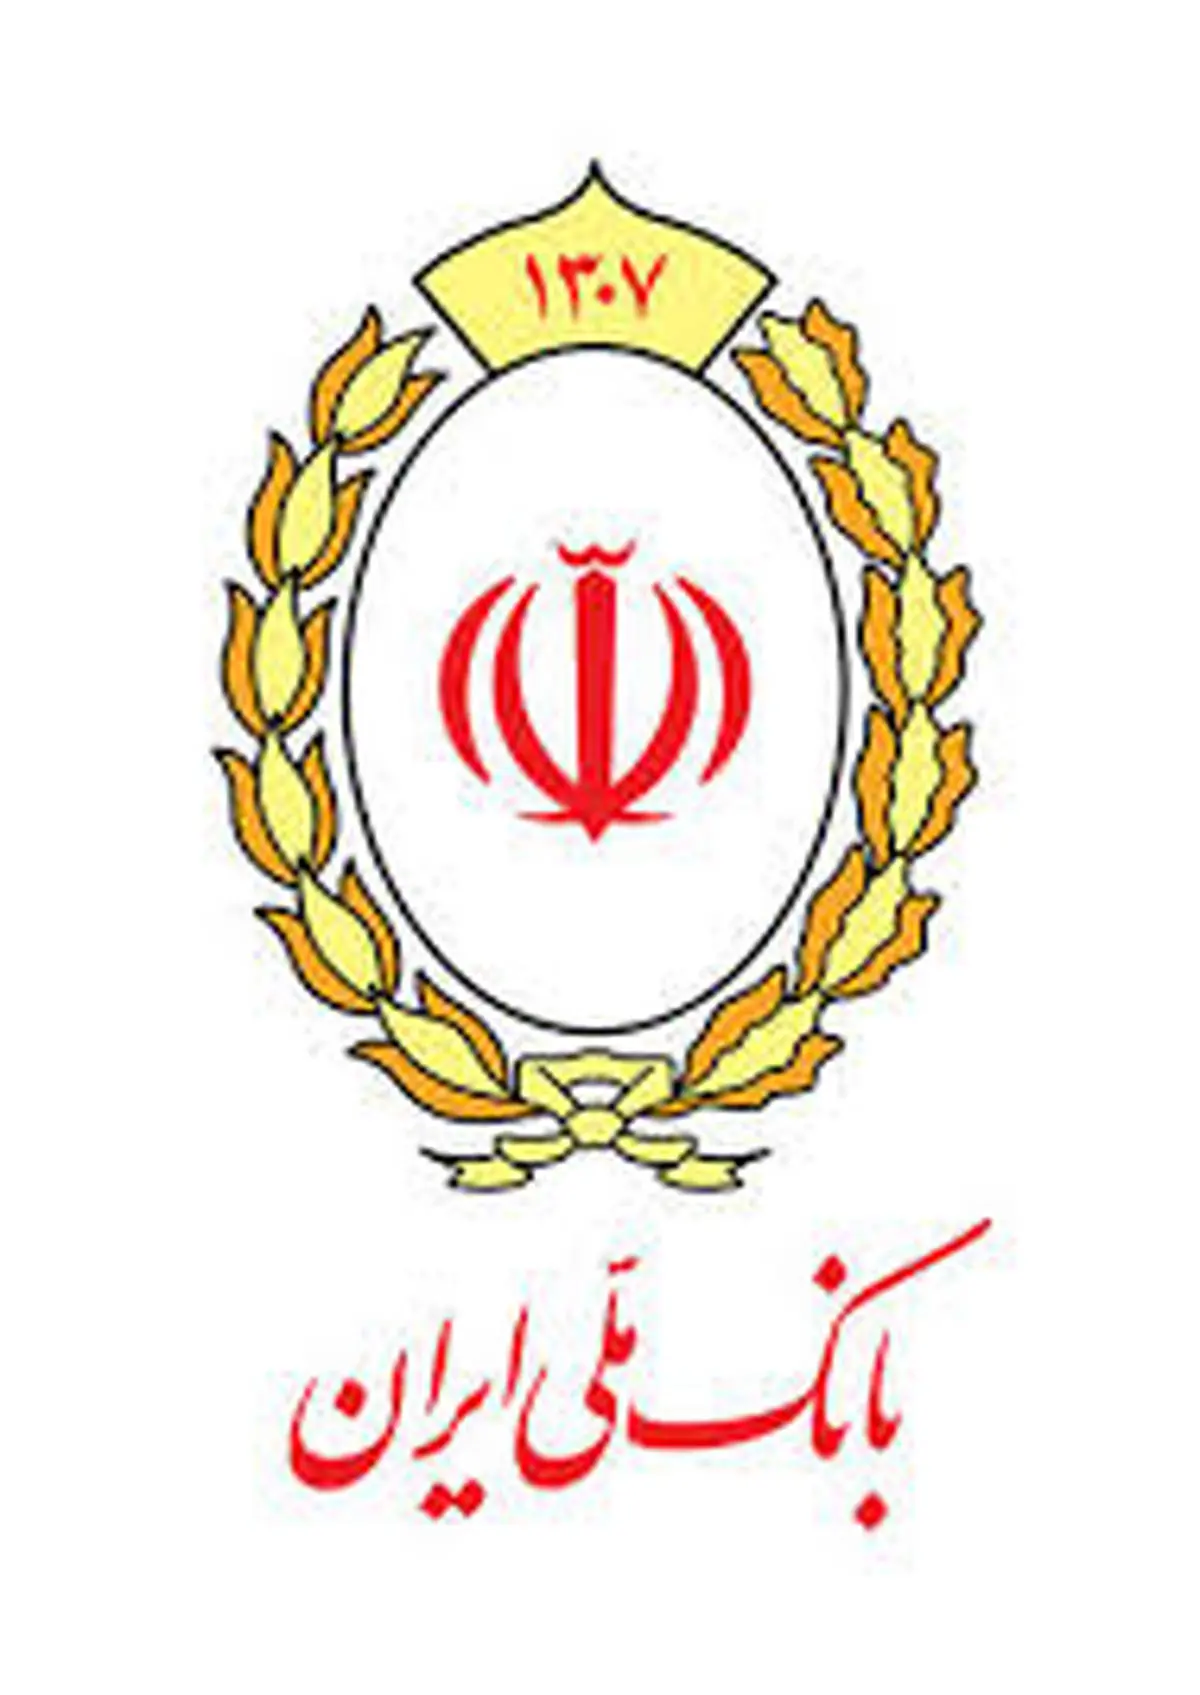 ادامه مسیر «هر جا سخن از اعتماد است، نام بانک ملی ایران می درخشد» با «اعتماد می ماند»

